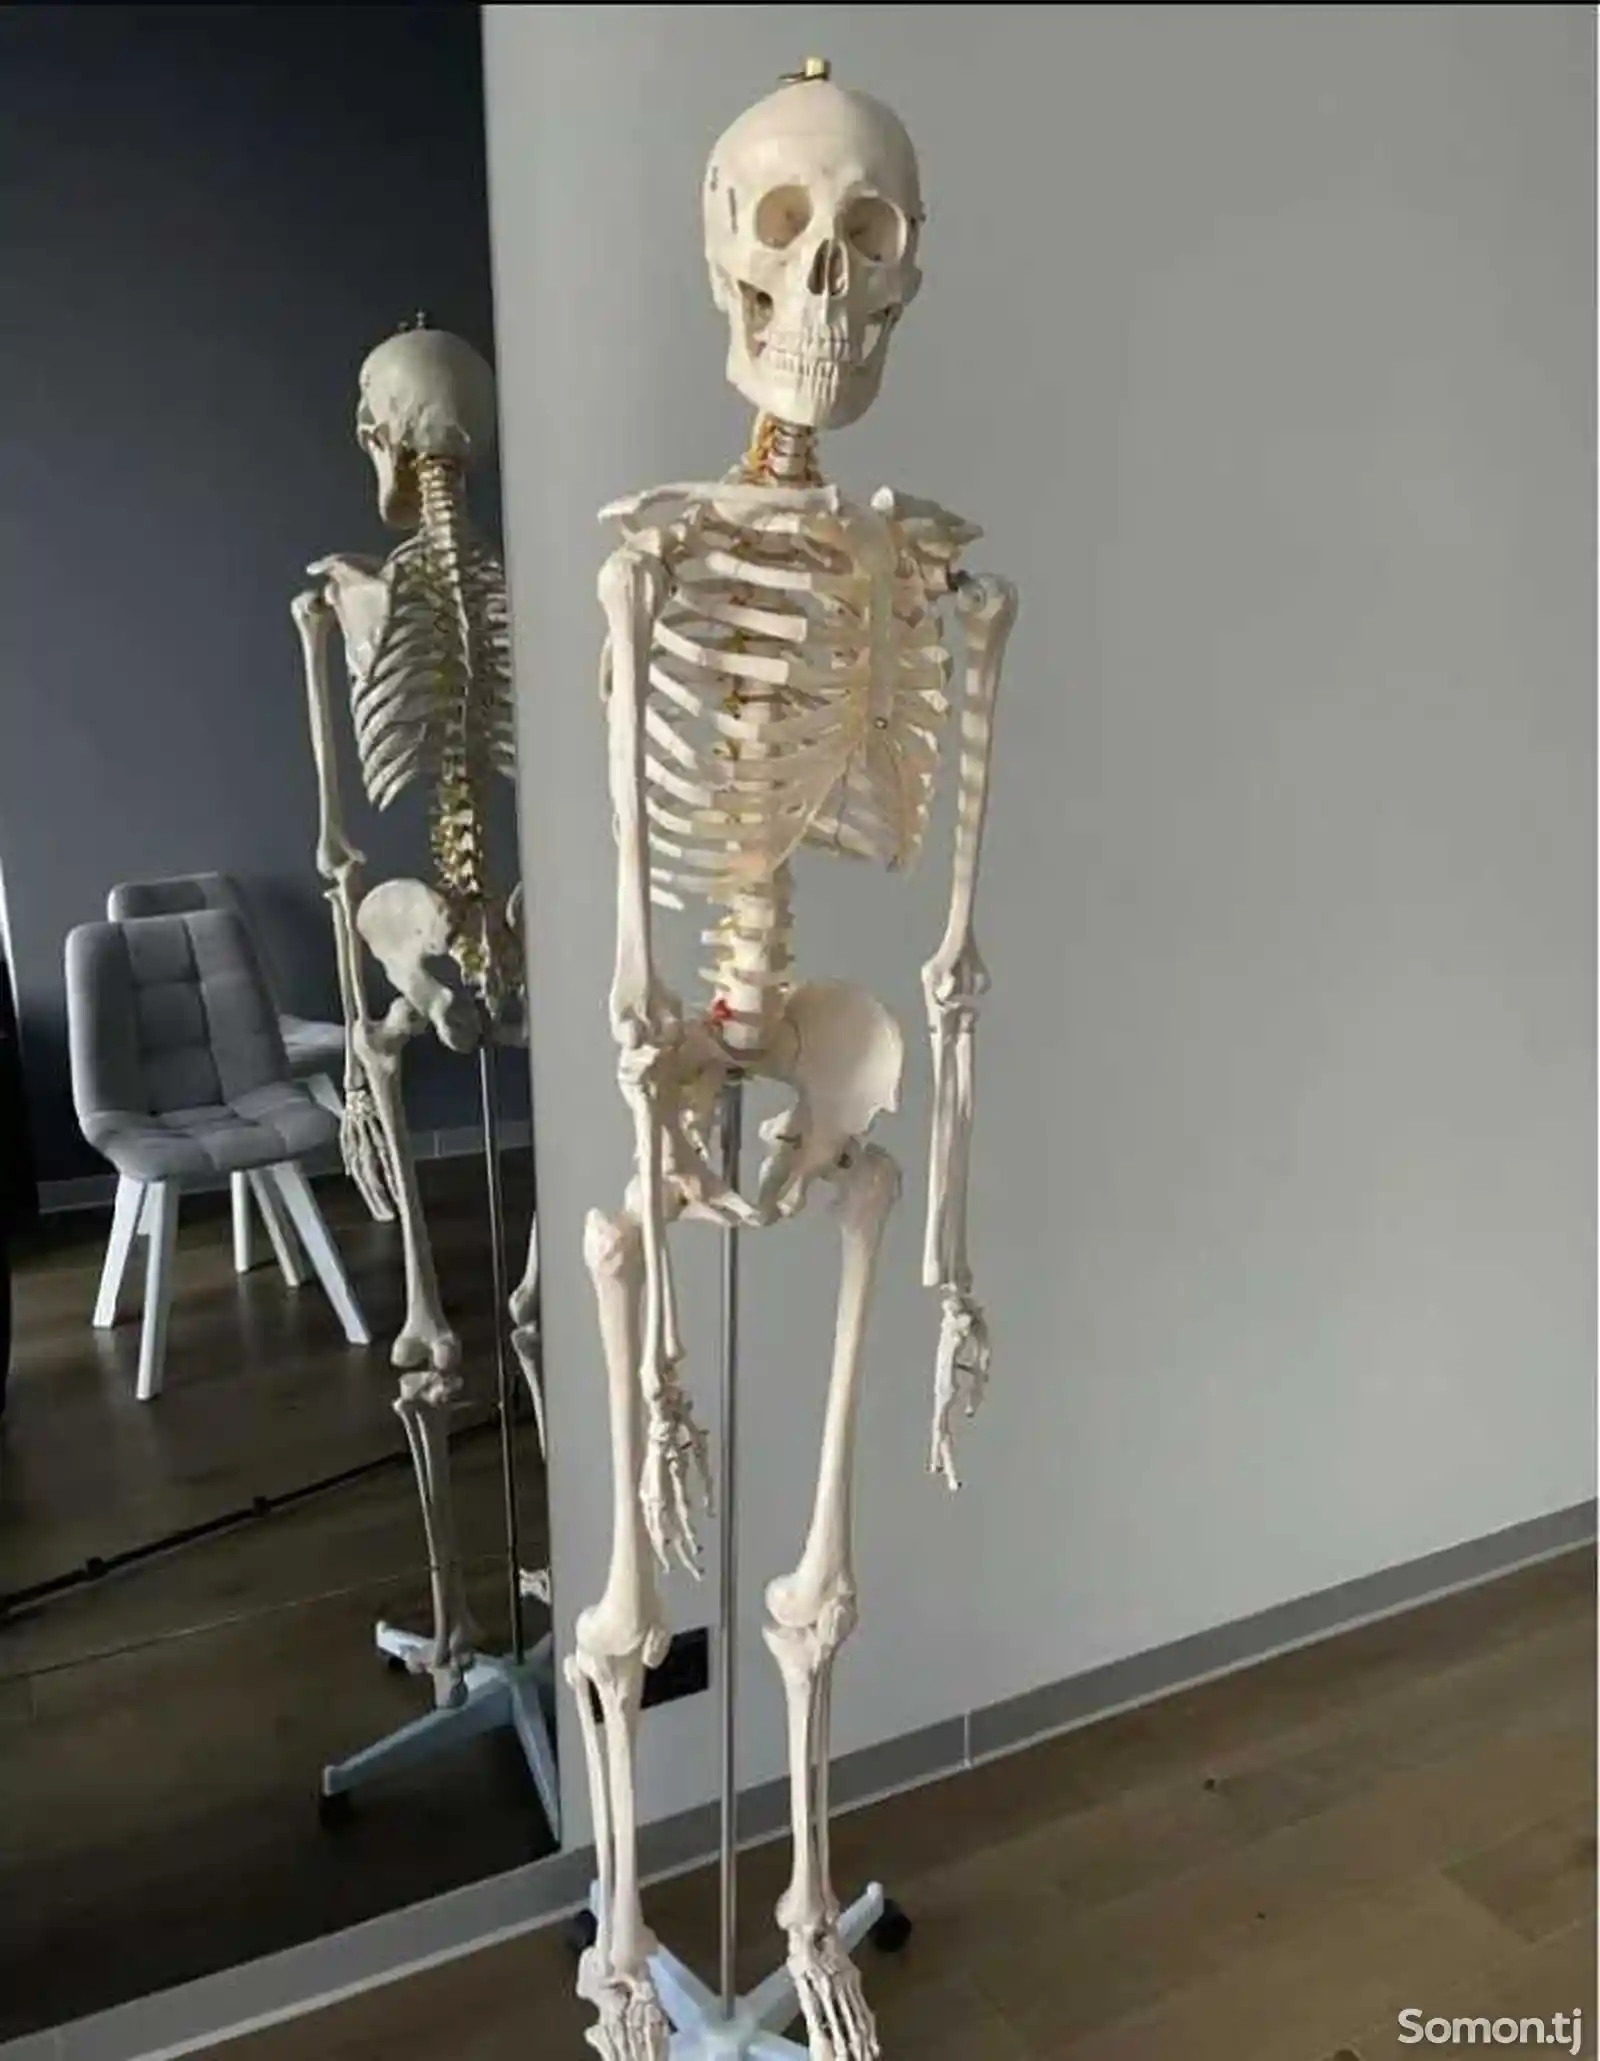 Анатомический скелет человека 170см